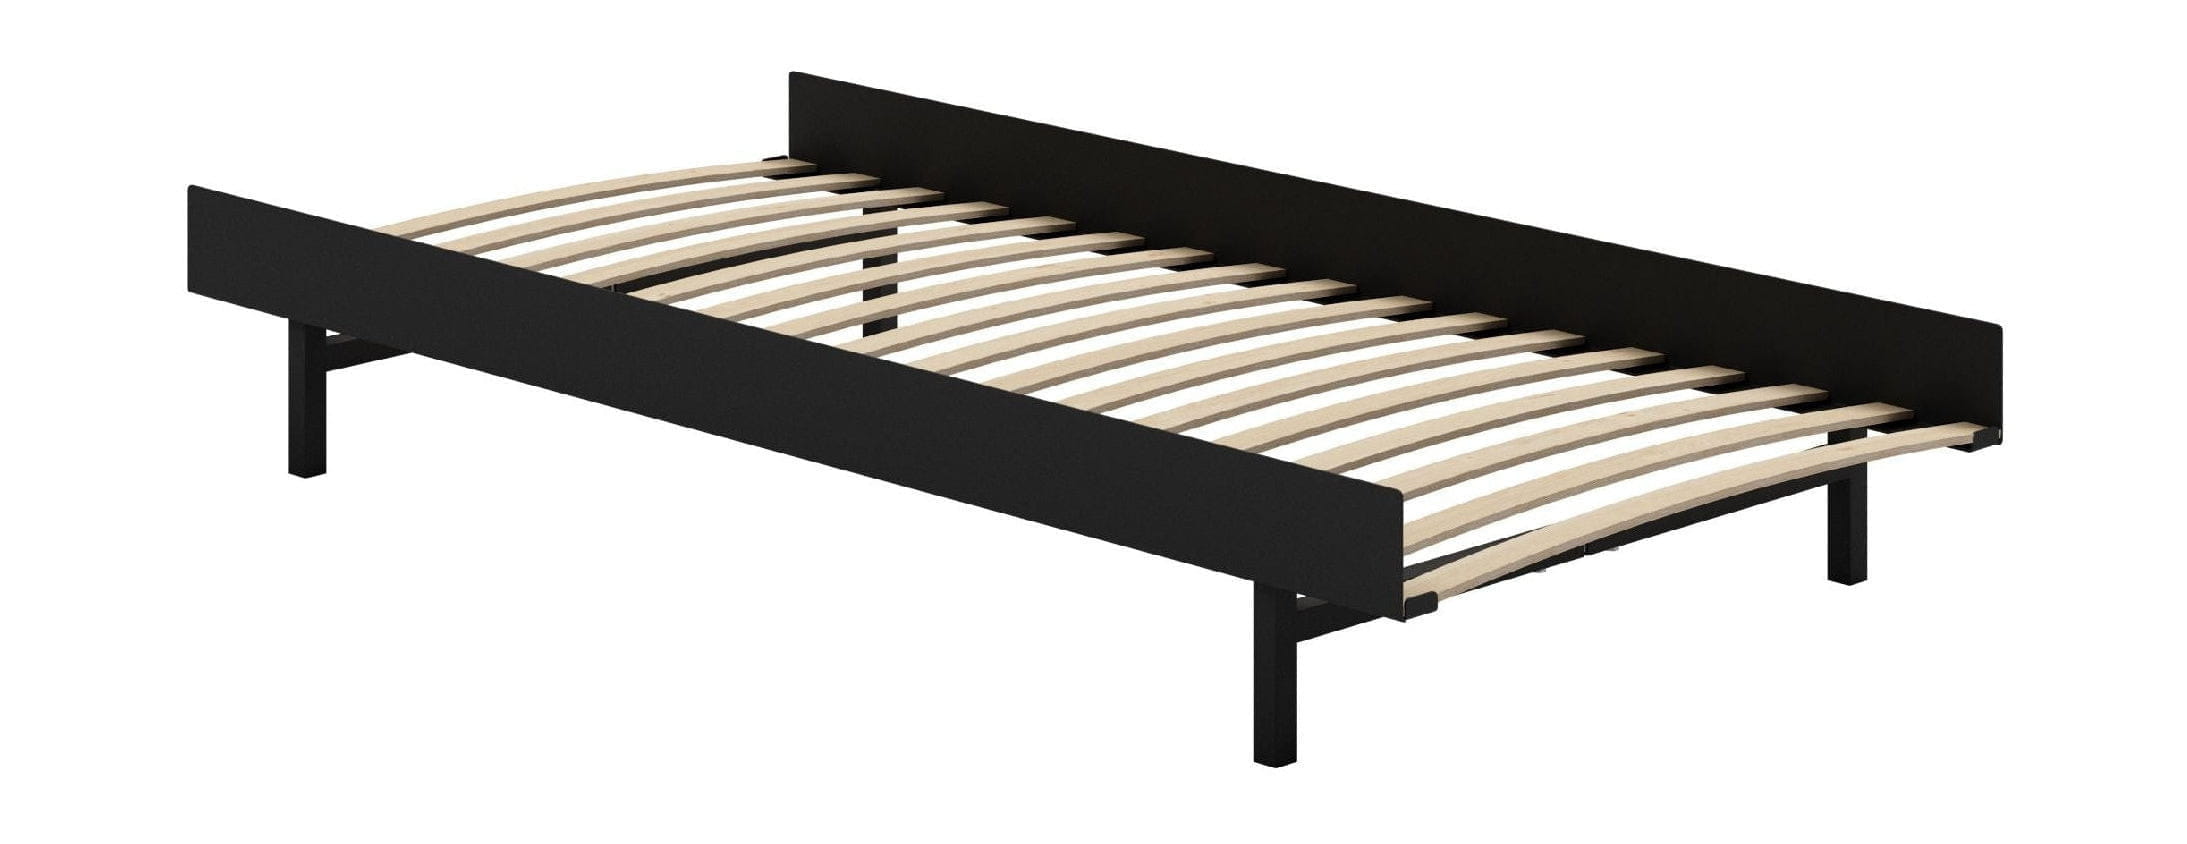 Moebe Bed With Bed Slats 90 Cm, Black